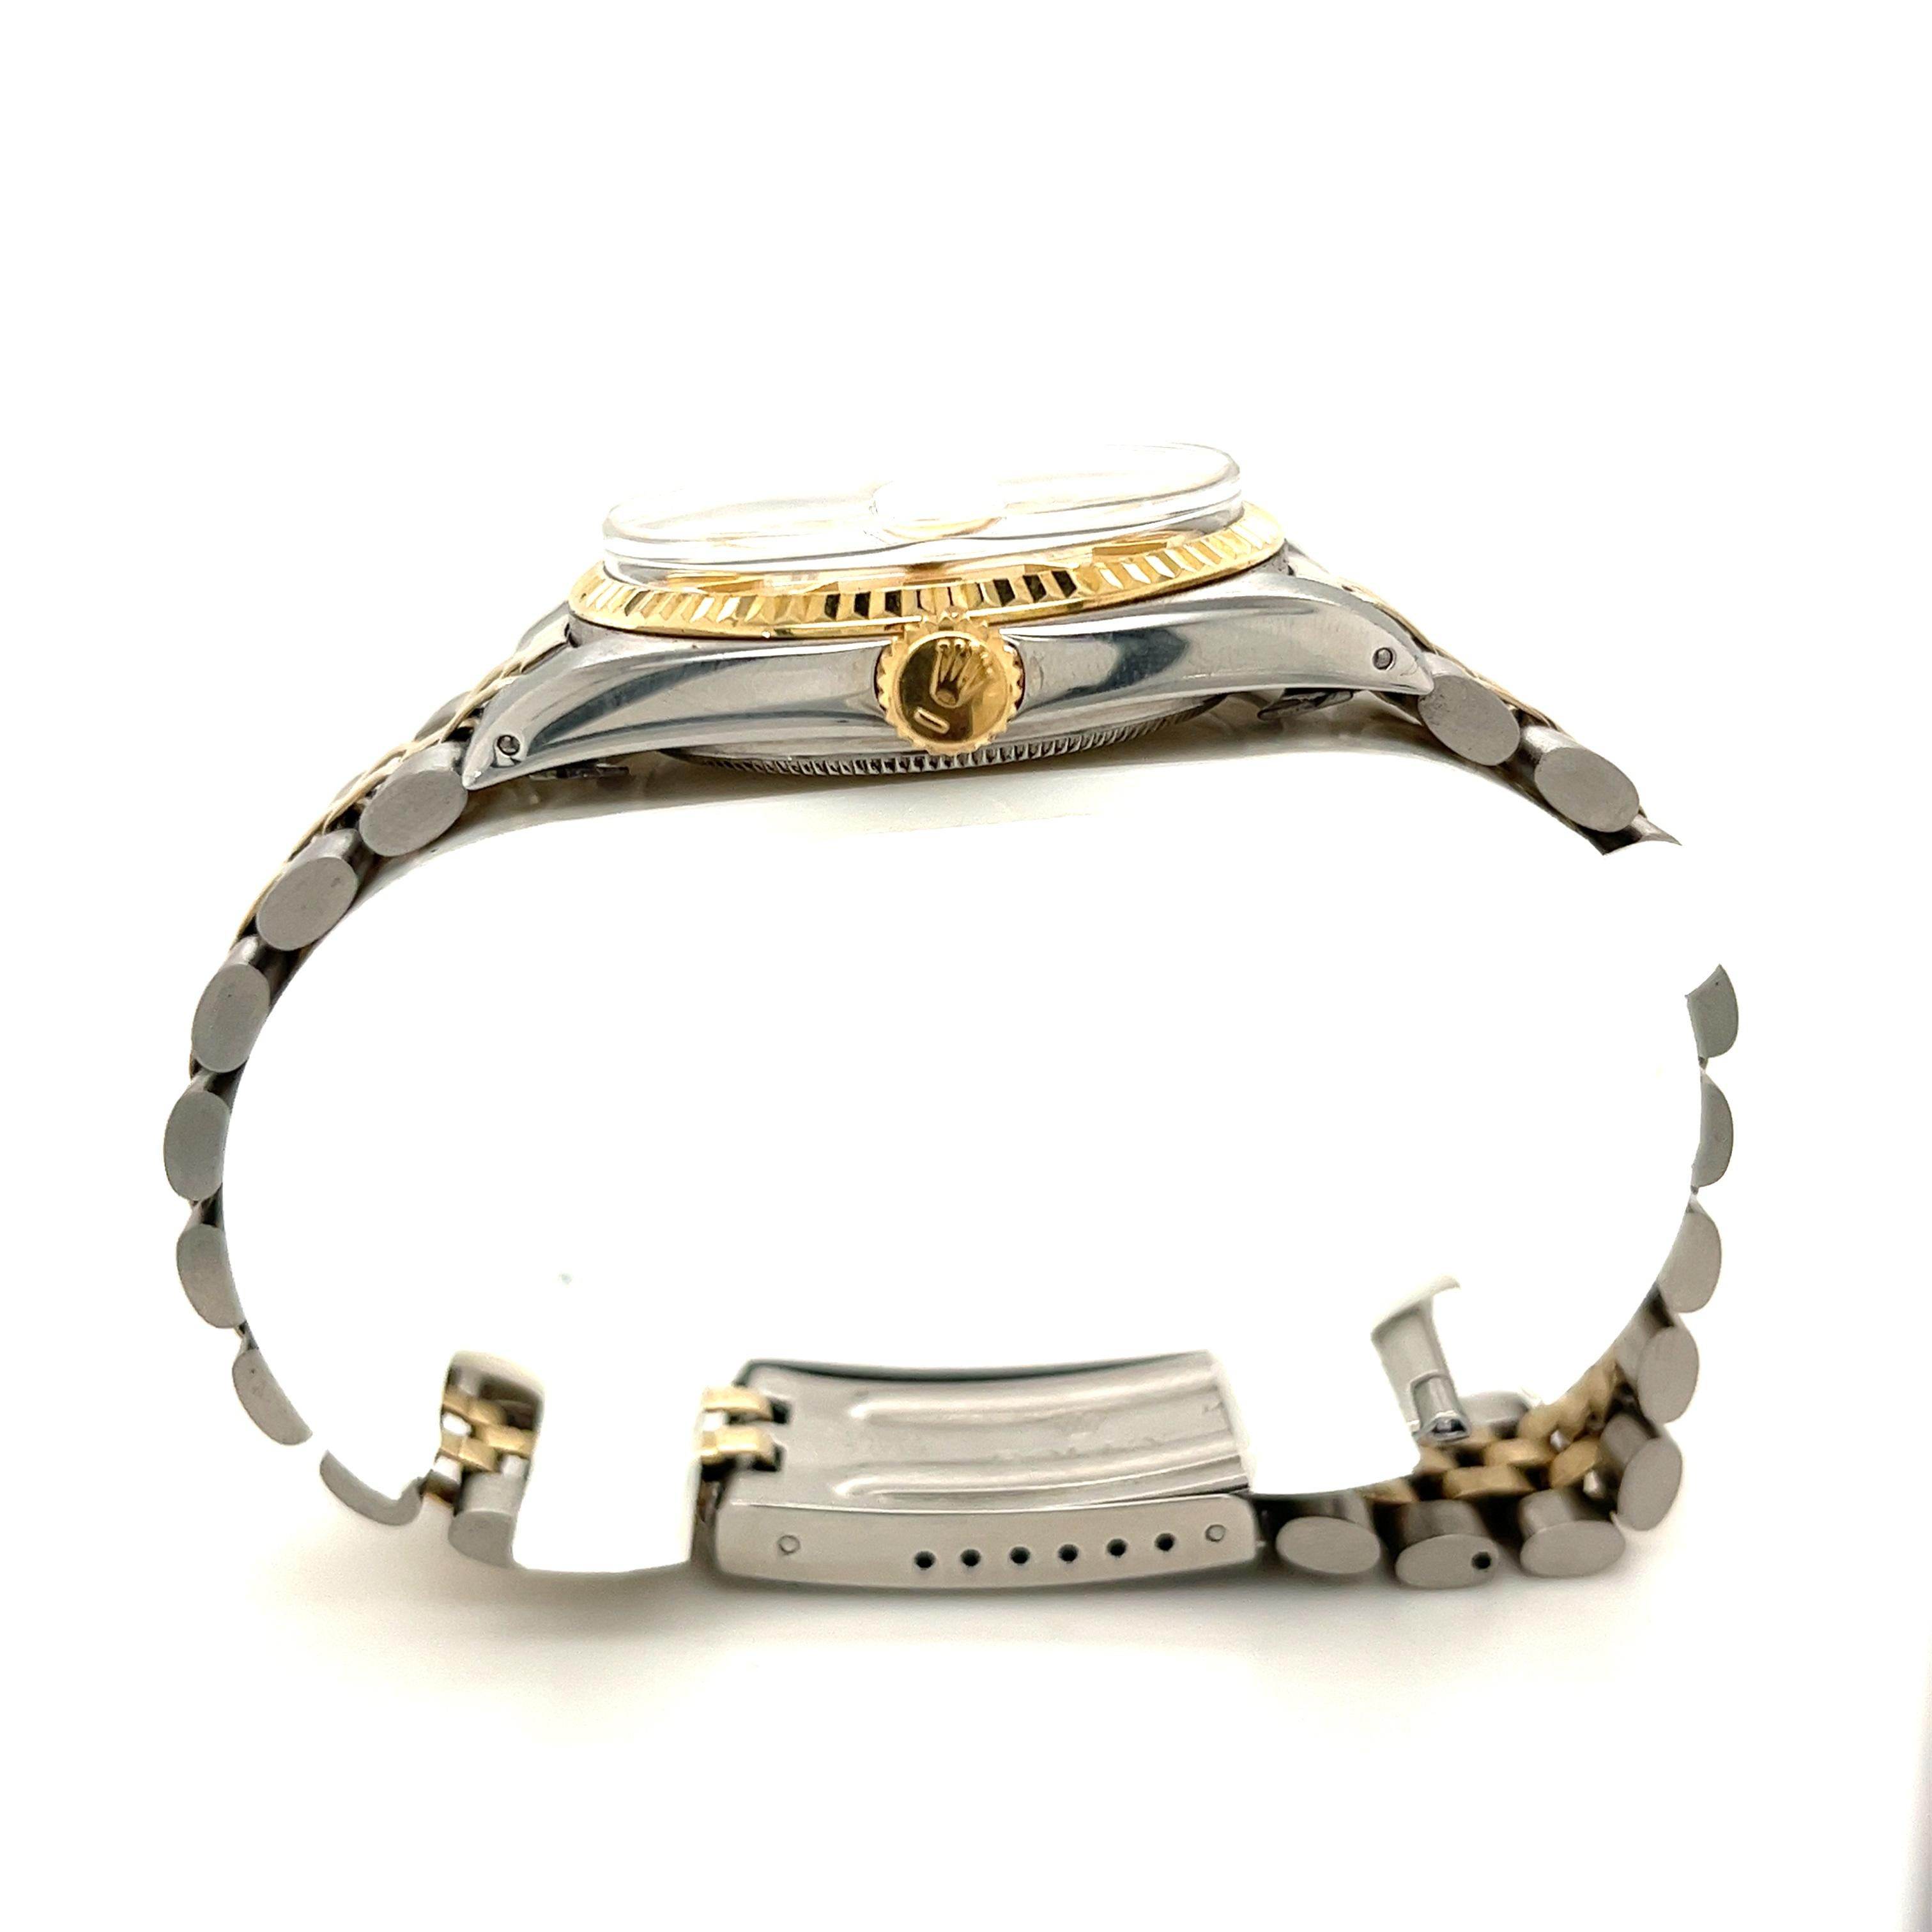 Rolex Montre Datejust bicolore en acier inoxydable avec superposition d'or 18 carats. Cadran de 36 mm, réf. 1601 Datejust avec cadran de couleur or et complication cyclope à 3 heures. La lunette cannelée est en cristal saphir. Toutes les pièces sont